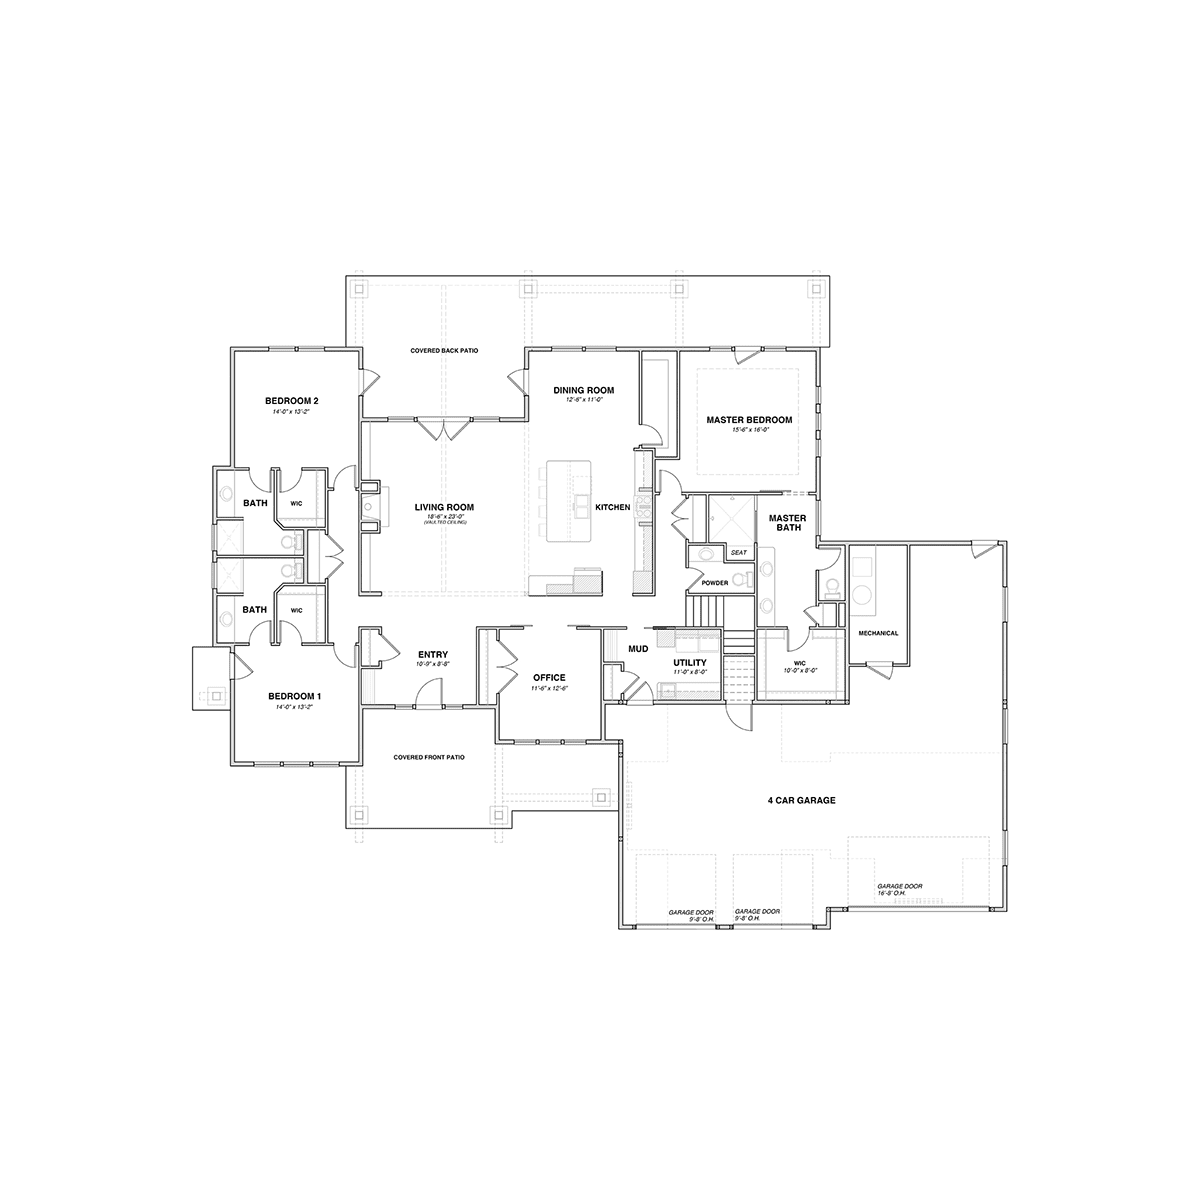 The Revelstoke Main Floor Plan - Hayden, ID